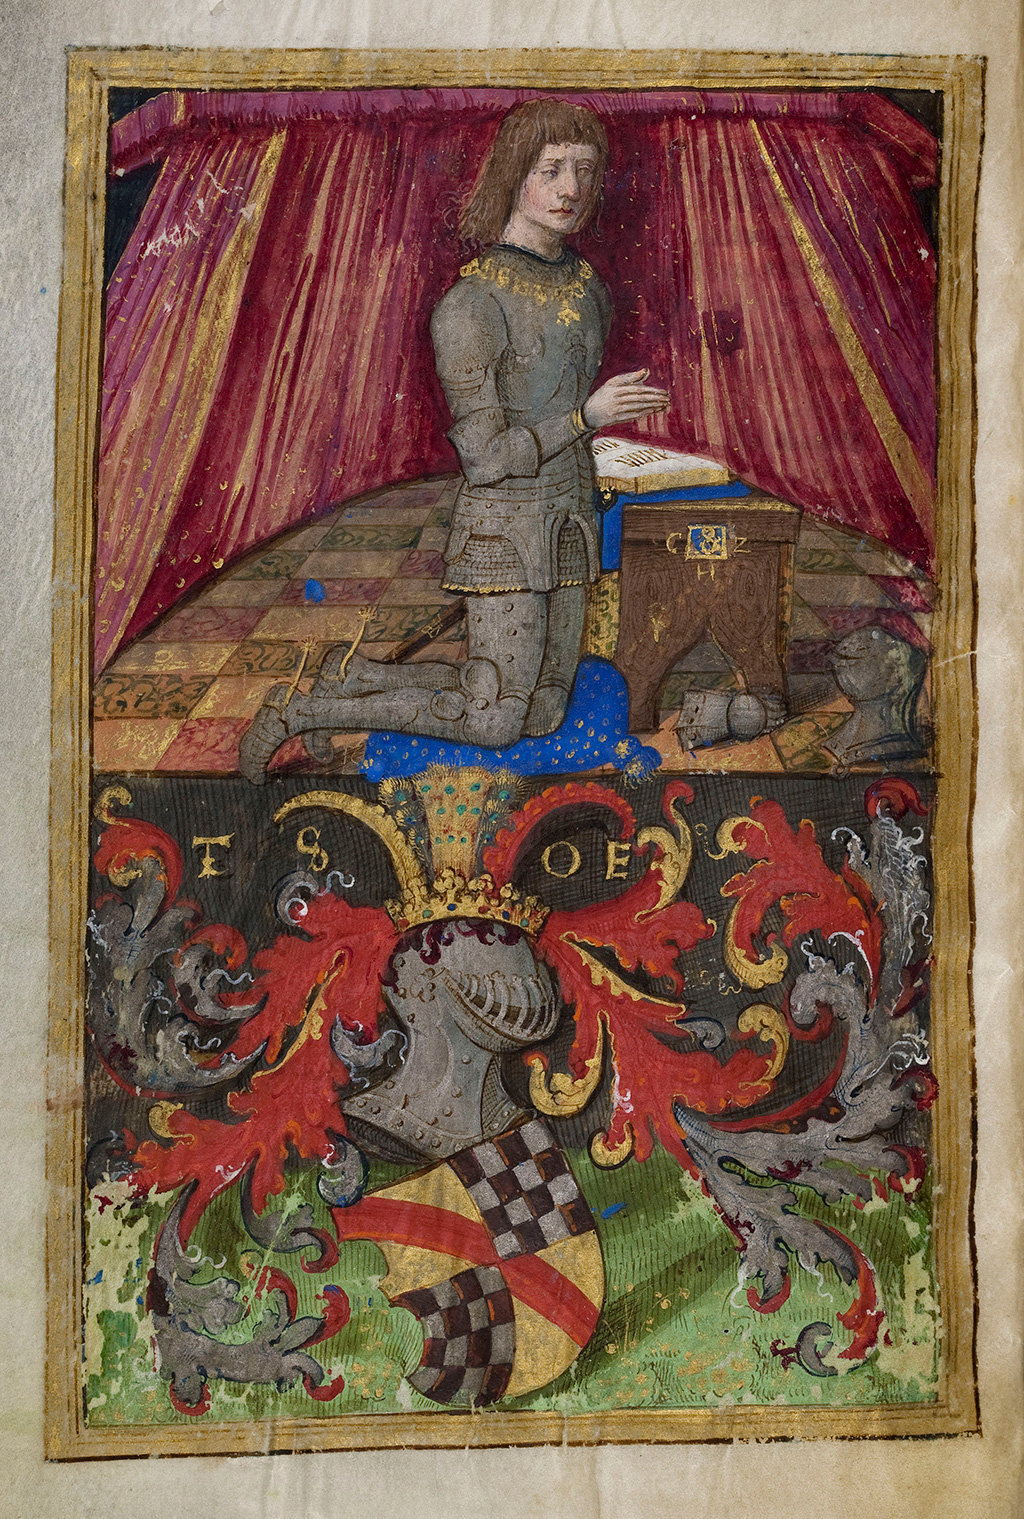 Zu sehen ist eine Szenerie aus dem Stundenbuch des Markgrafen  Christoph I. von Baden. Im oberen Bildbereich kniet eine Person vor einem Gebetstisch mit einem aufgeschlagenen Buch. Im unteren Bildbereich sind Helm und Schild mit den badischen Farben dargestellt.  